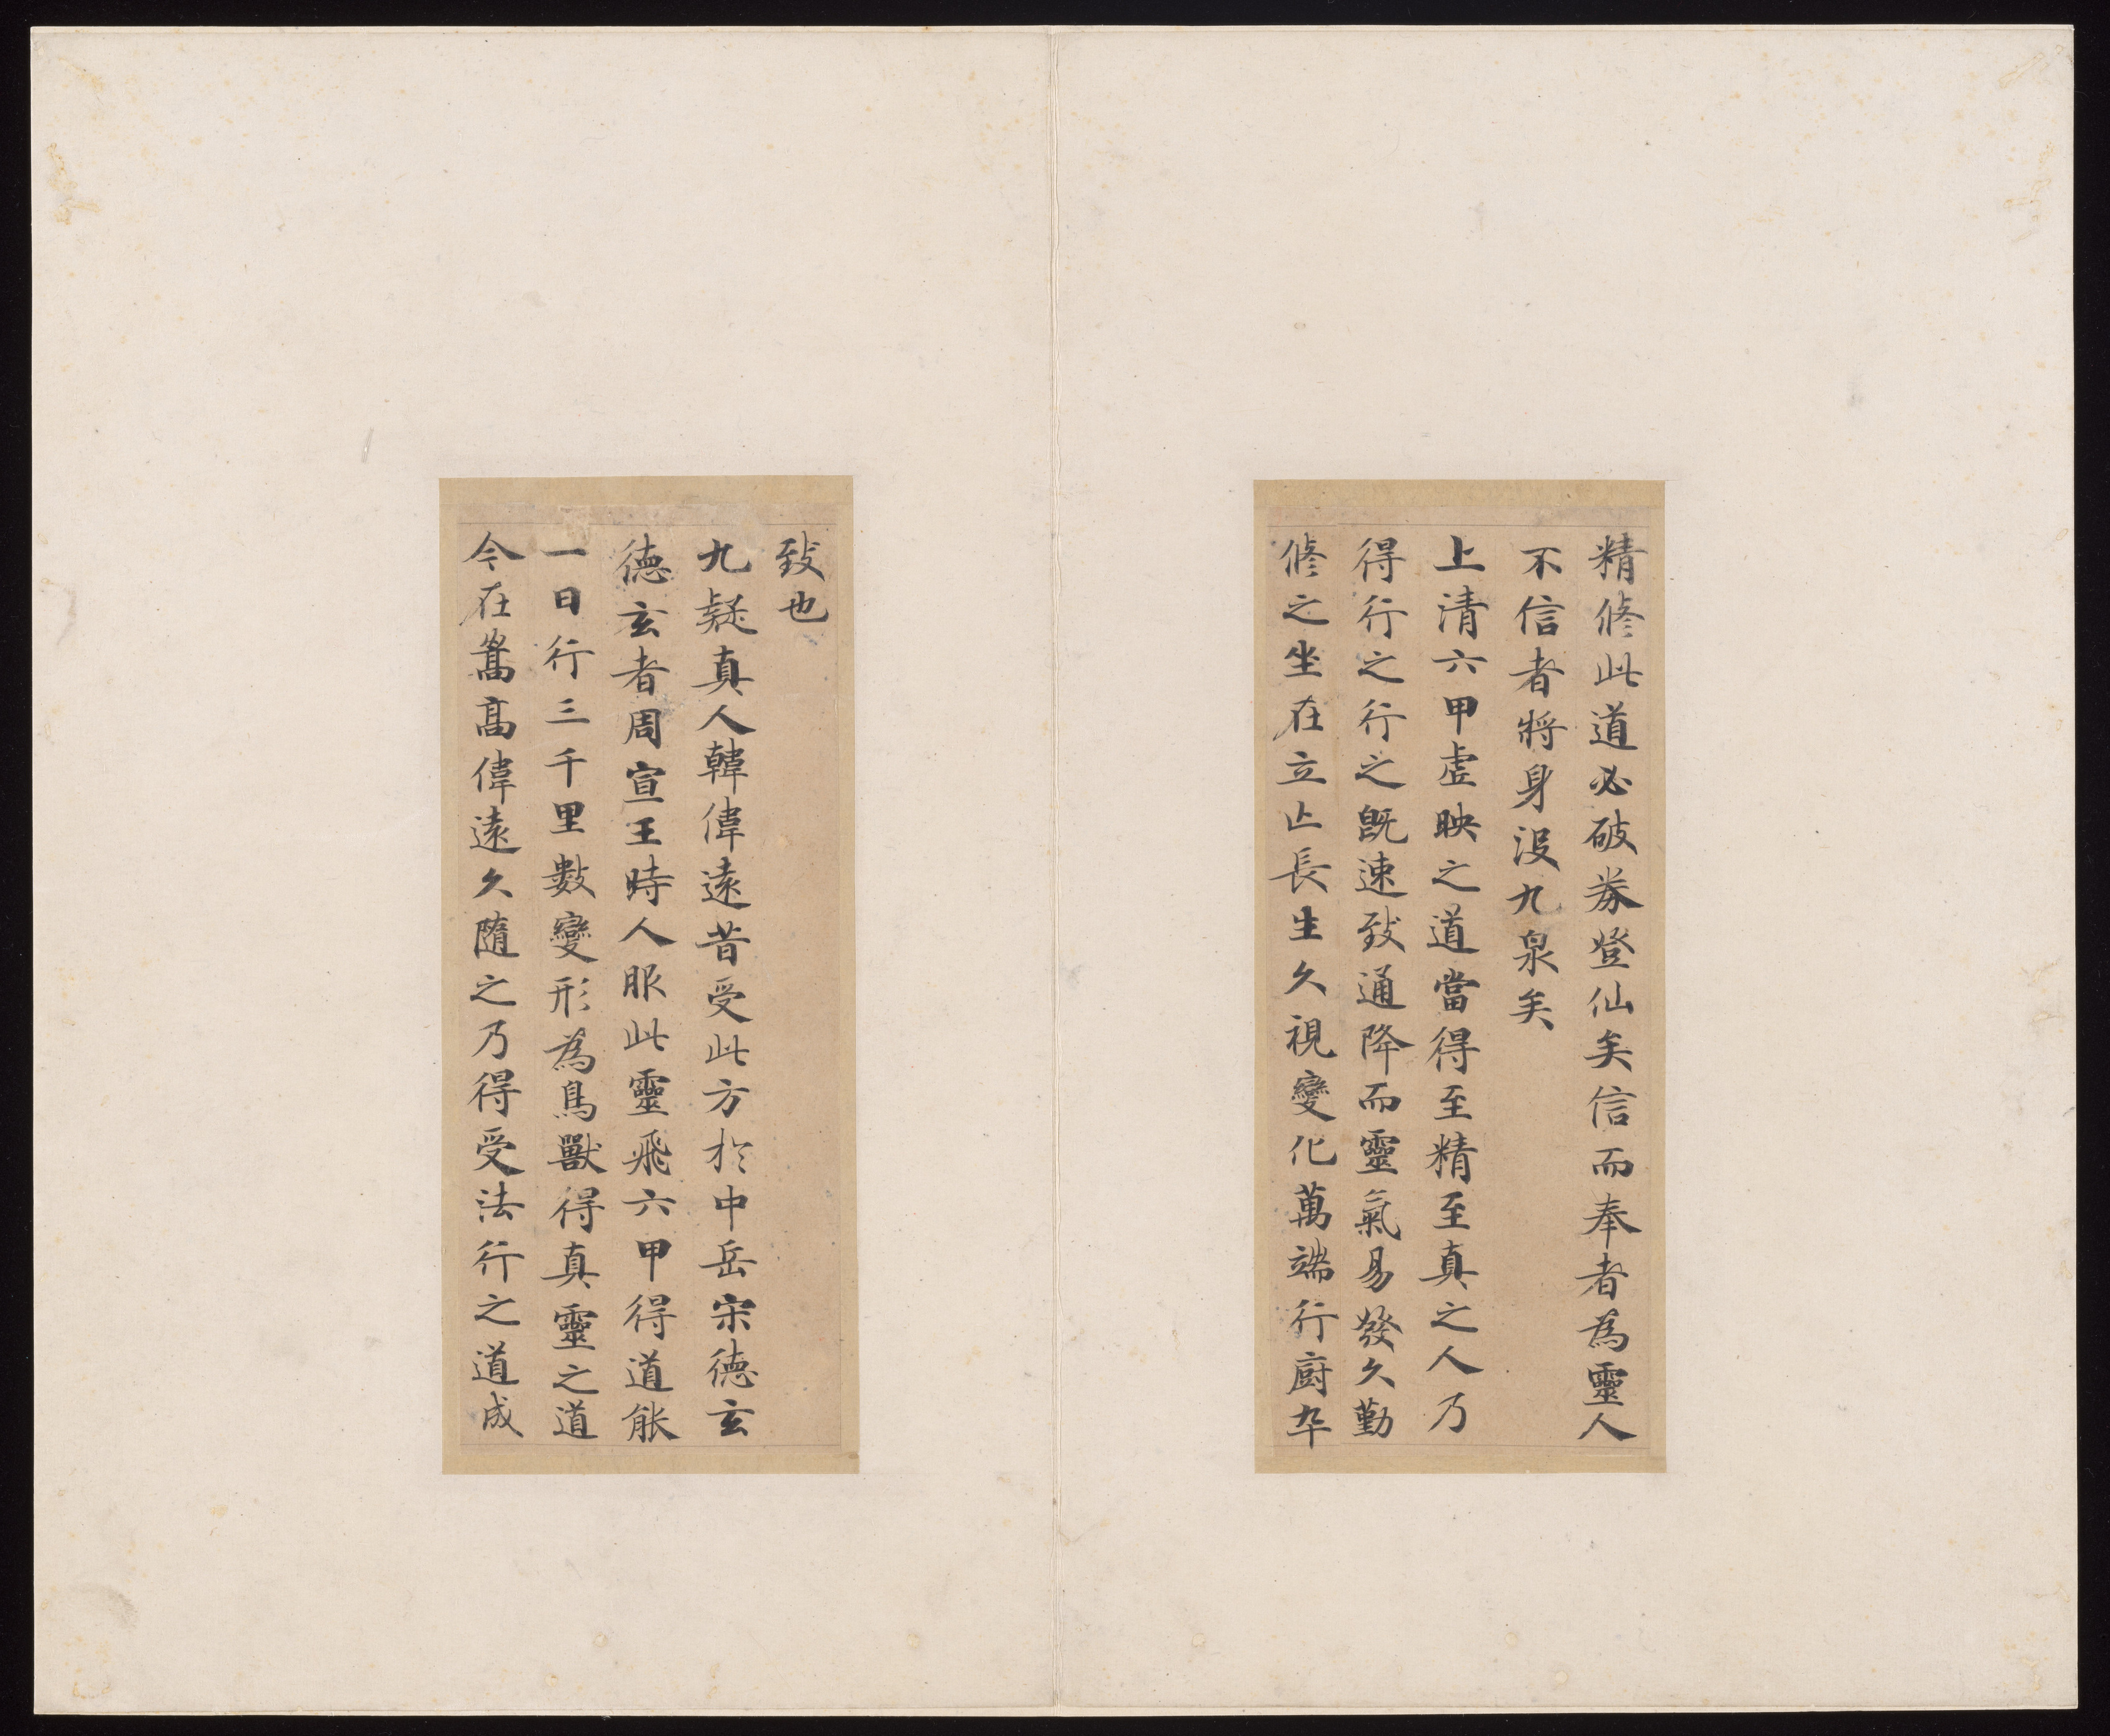 Attributed To Zhong Shaojing Classic Of Spiritual Flight China Tang Dynasty 618 907 The Metropolitan Museum Of Art